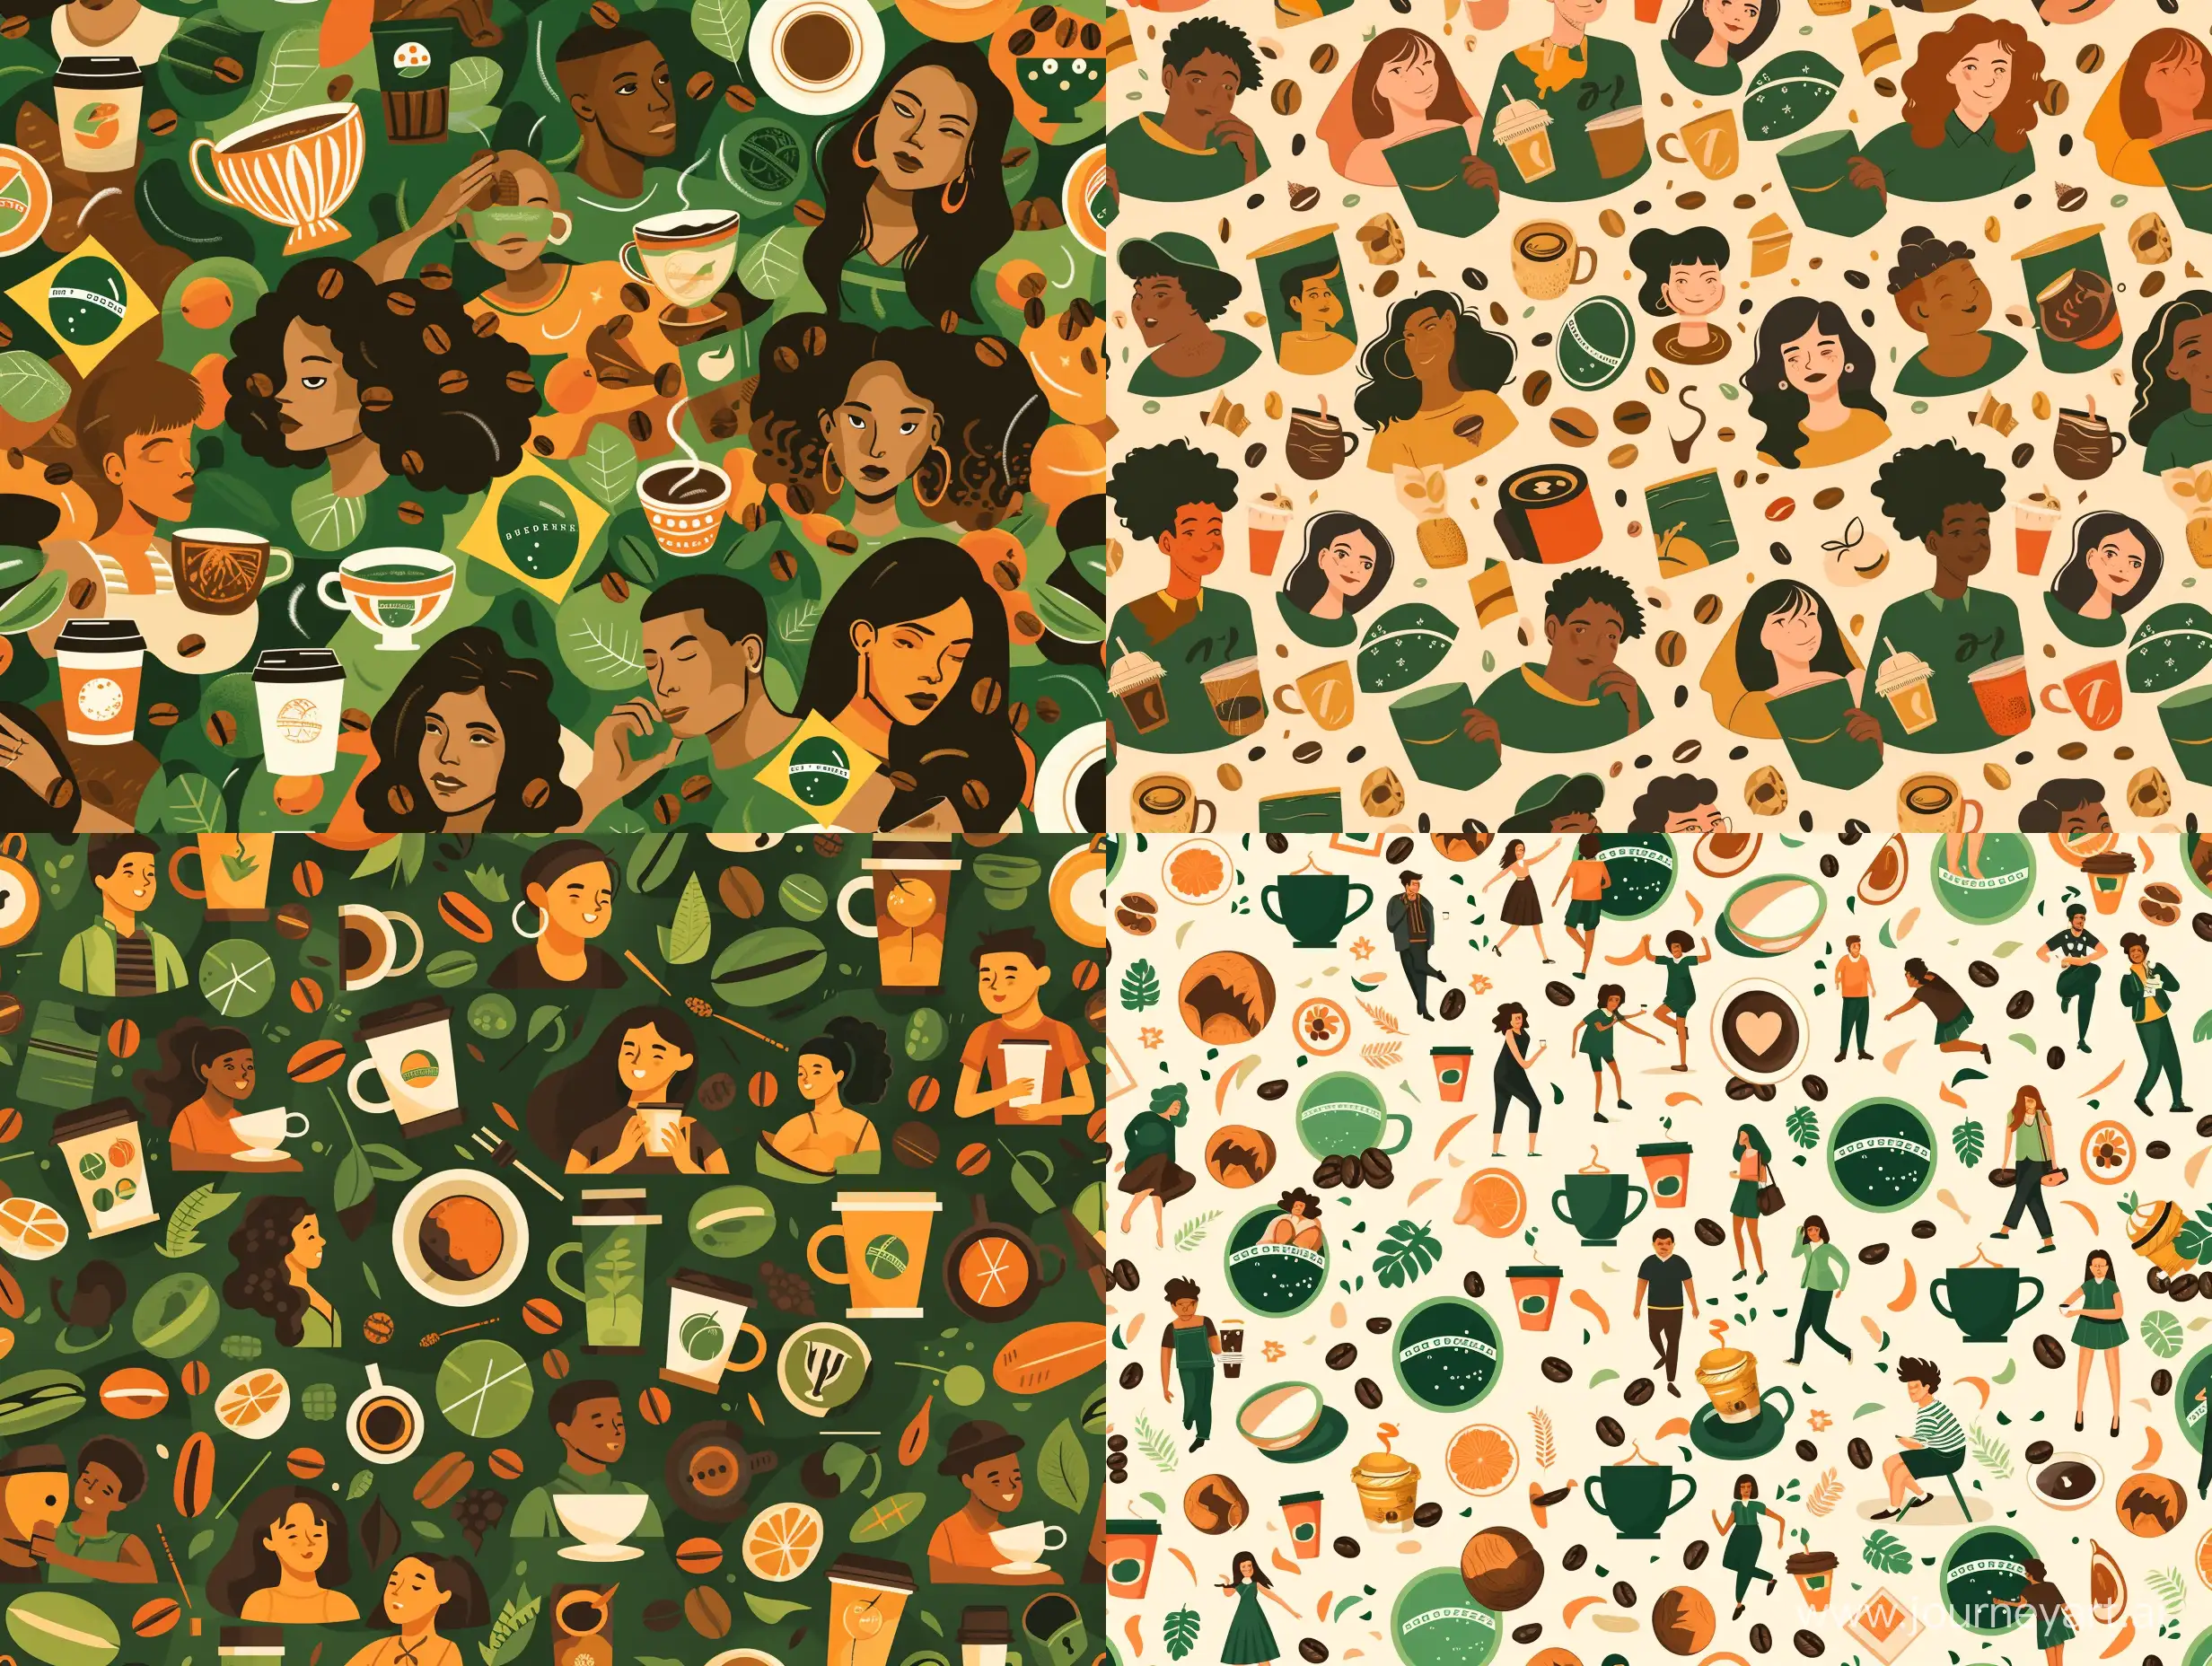 Паттерн иллюстрация молодые люди пьют кофе в перемешку с символами Бразилии, чашками, зернами кофе в зеленых, темно-зеленых, коричневых и оранжевых цветах